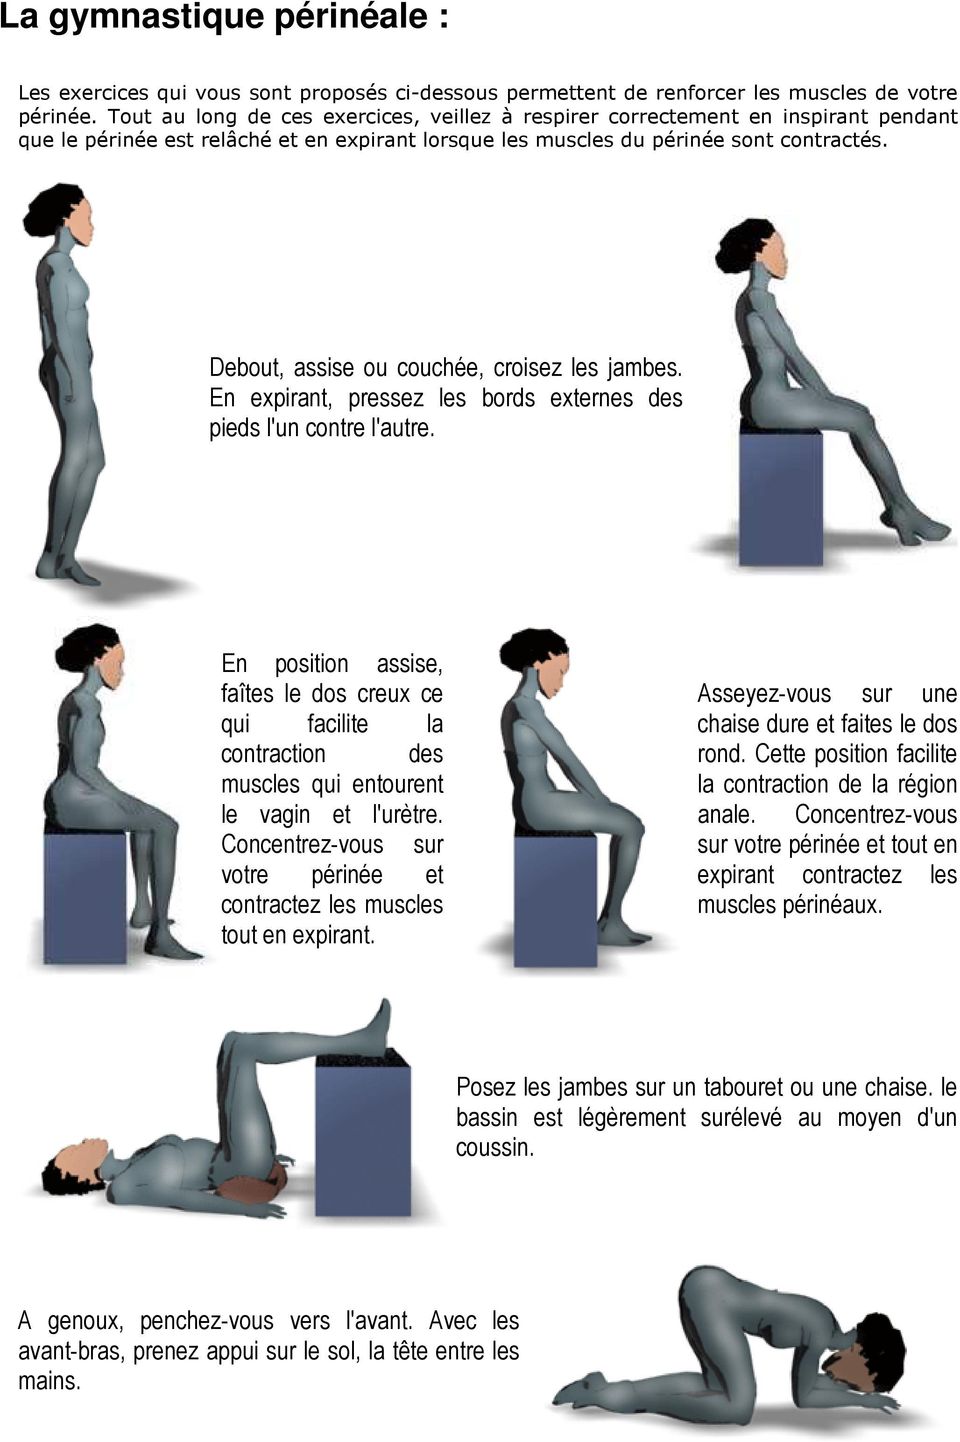 Debout, assise ou couchée, croisez les jambes. En expirant, pressez les bords externes des pieds l'un contre l'autre.